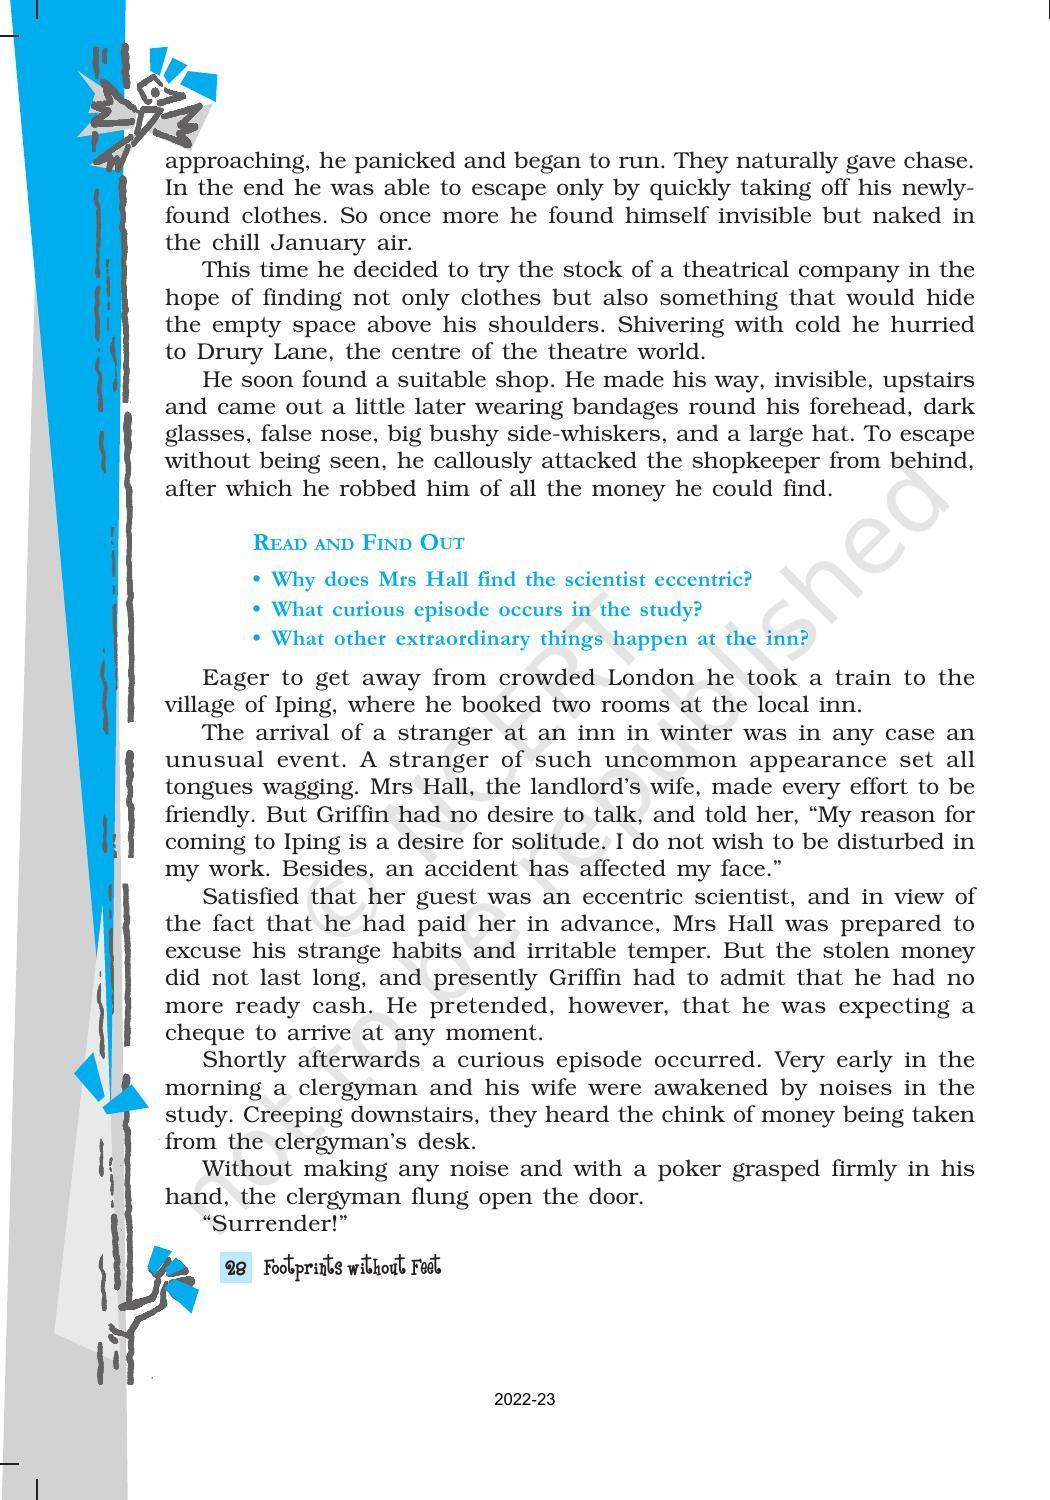 NCERT Book for Class 10 English Footprints Without Feet Chapter 5 Footprints without Feet - Page 3